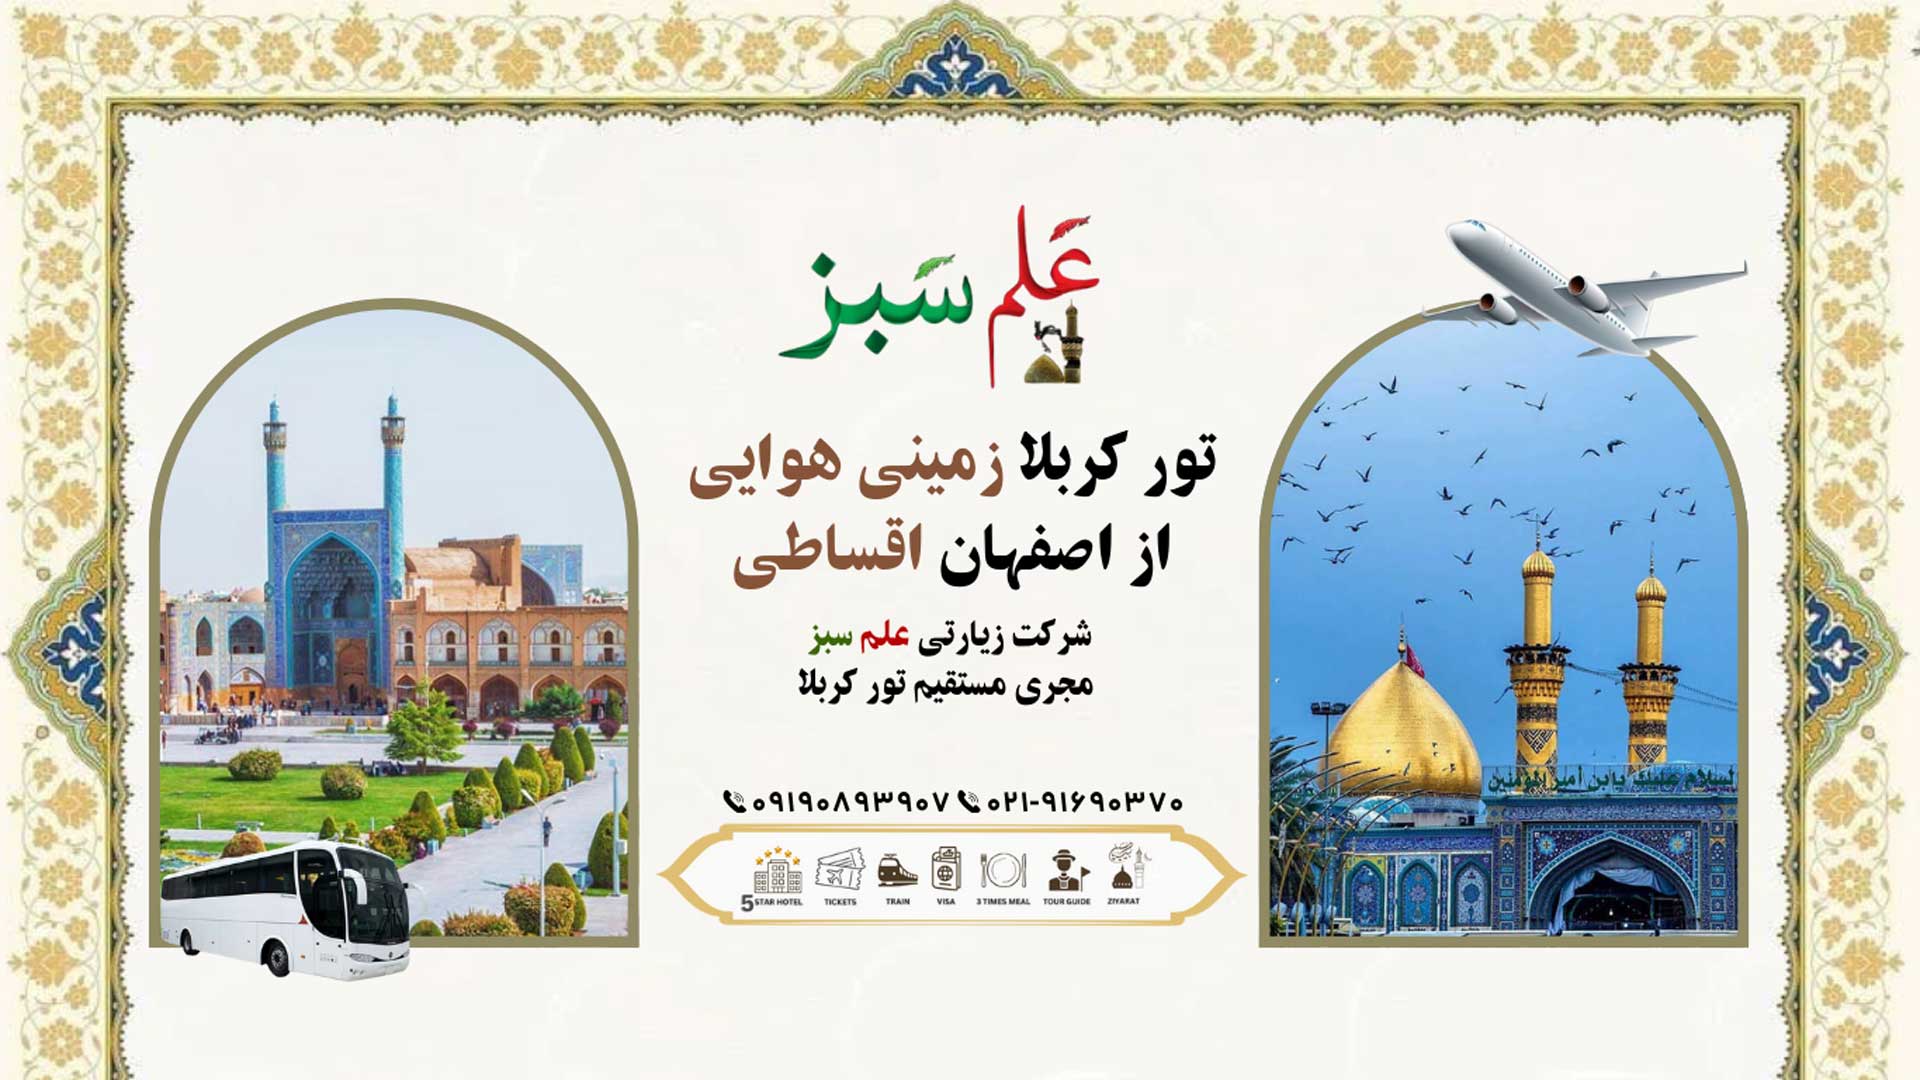 تور کربلا زمینی هوایی از اصفهان اقساطی